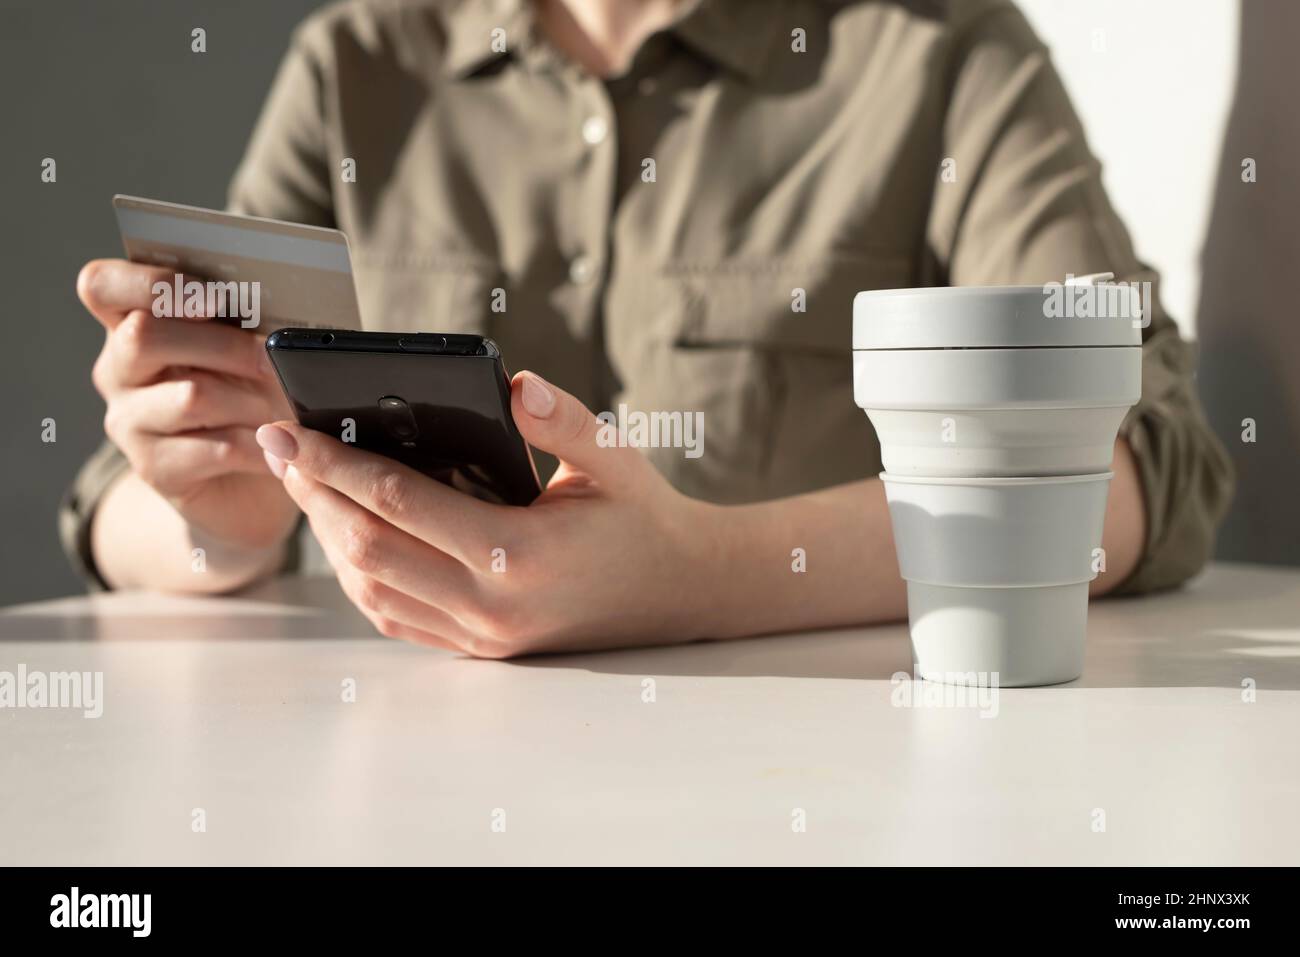 Weibliche Hände mit Kreditkarte und Telefon. Online bezahlen im App-Konzept. Frau sitzt am Tisch mit Take-away-Tasse und online einkaufen. Hochwertige Fotos Stockfoto